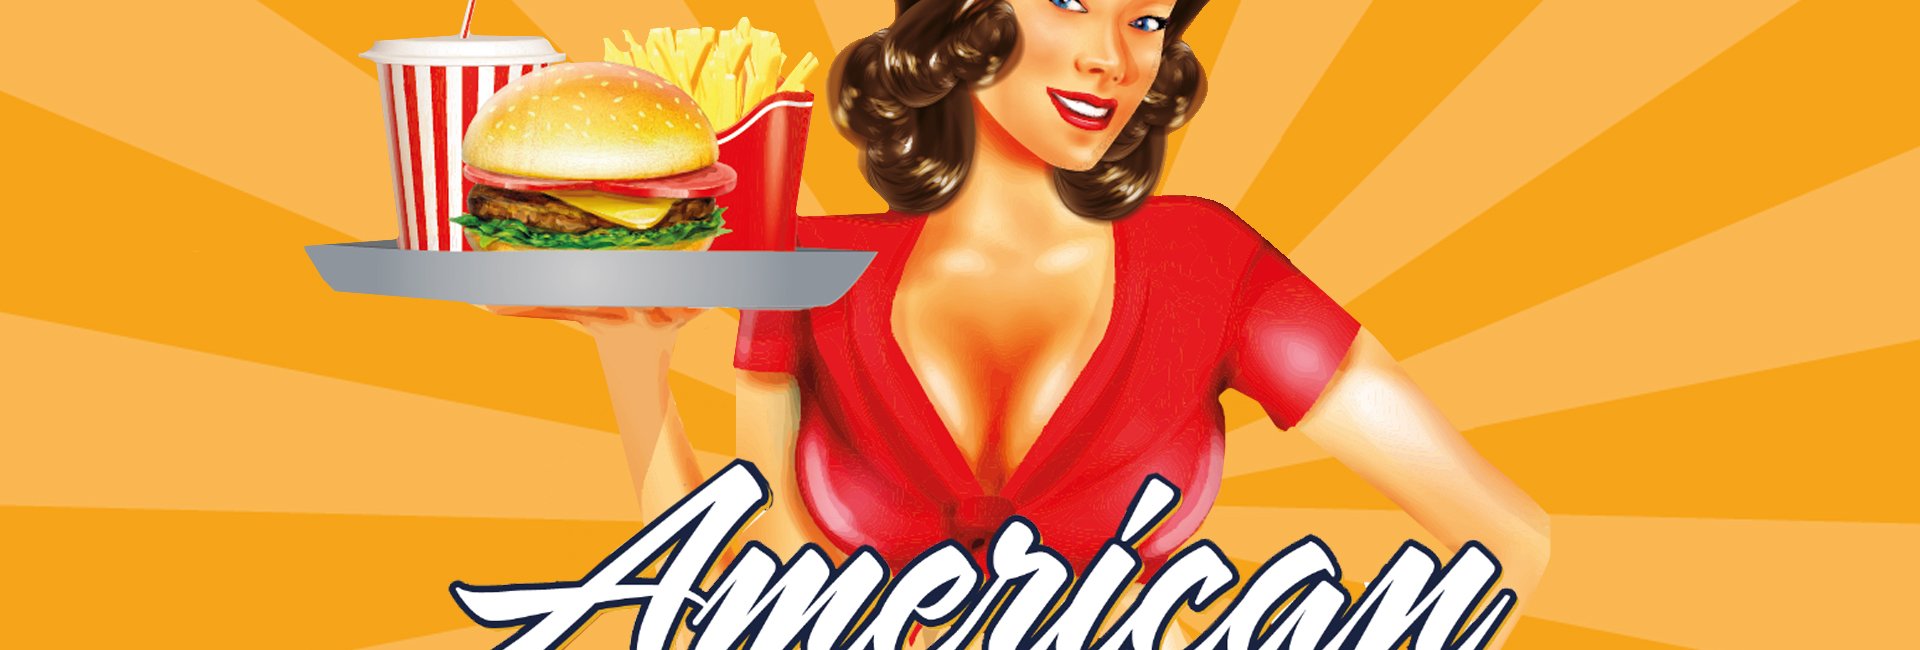 Kuchnia amerykańska